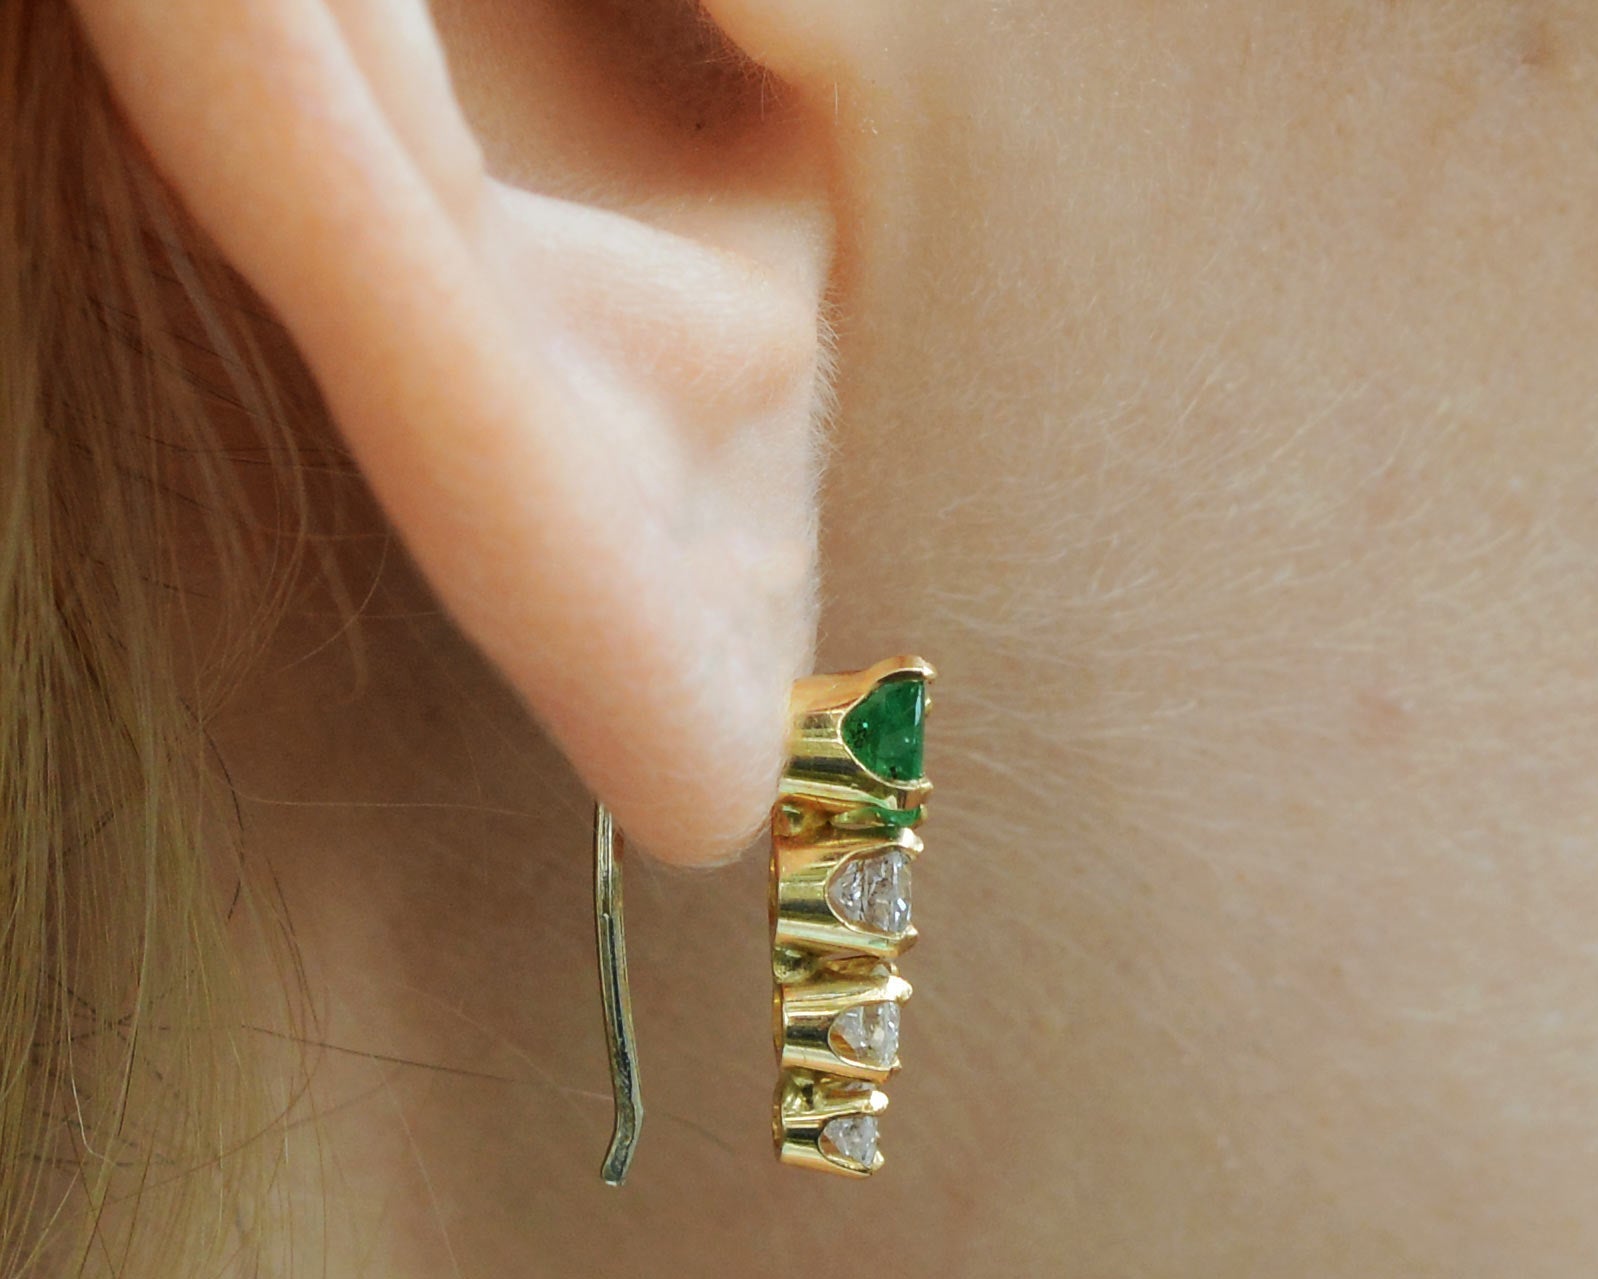 Vintage Estate Emerald & Diamond Contoured Drop Earrings